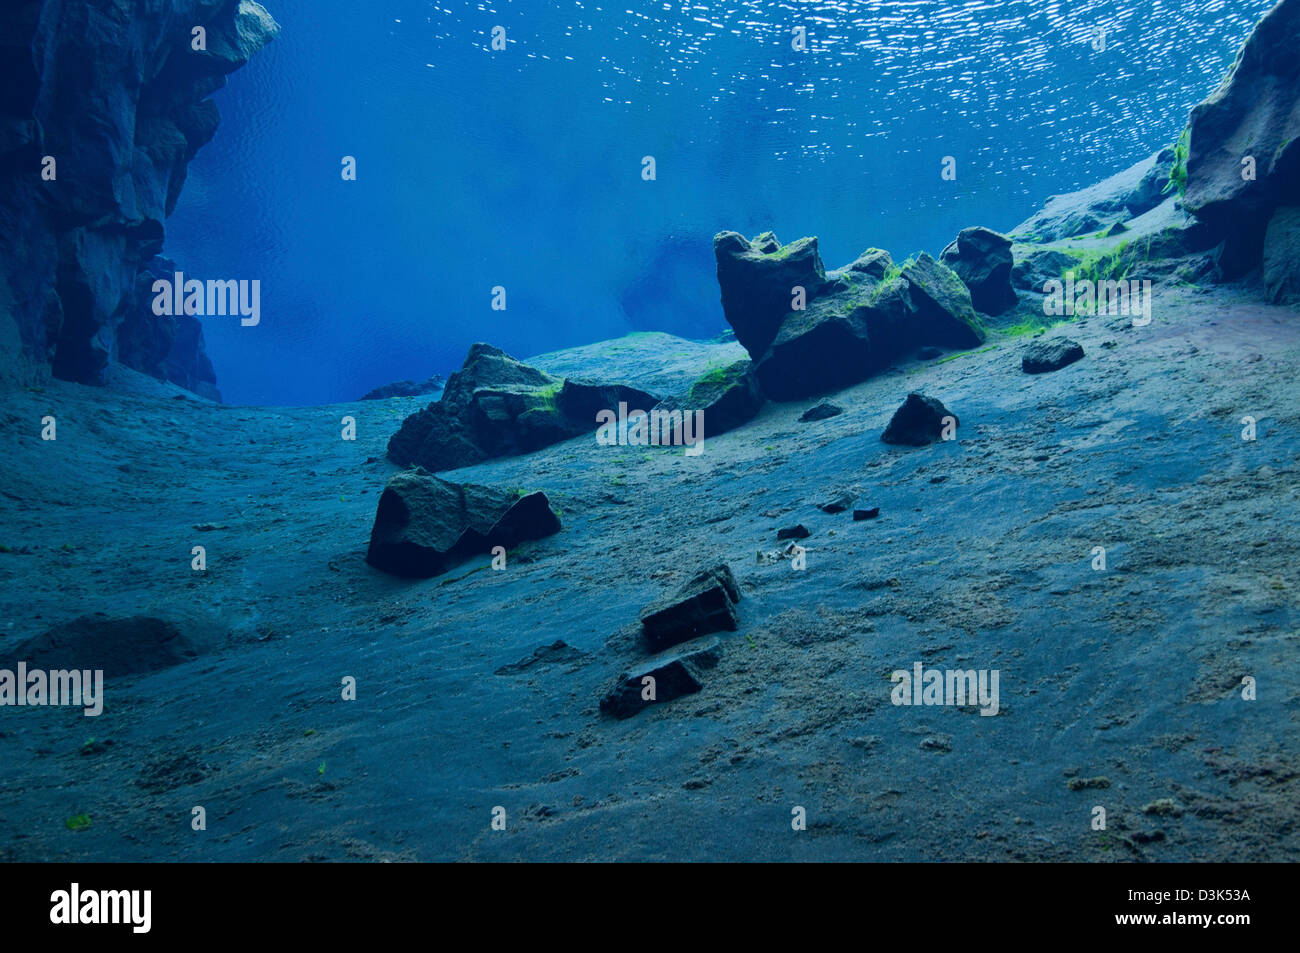 Sous-marine bleu paysage lunaire dans les eaux claires du lagon au crack, l'Islande. Silfra S.p.a. Banque D'Images